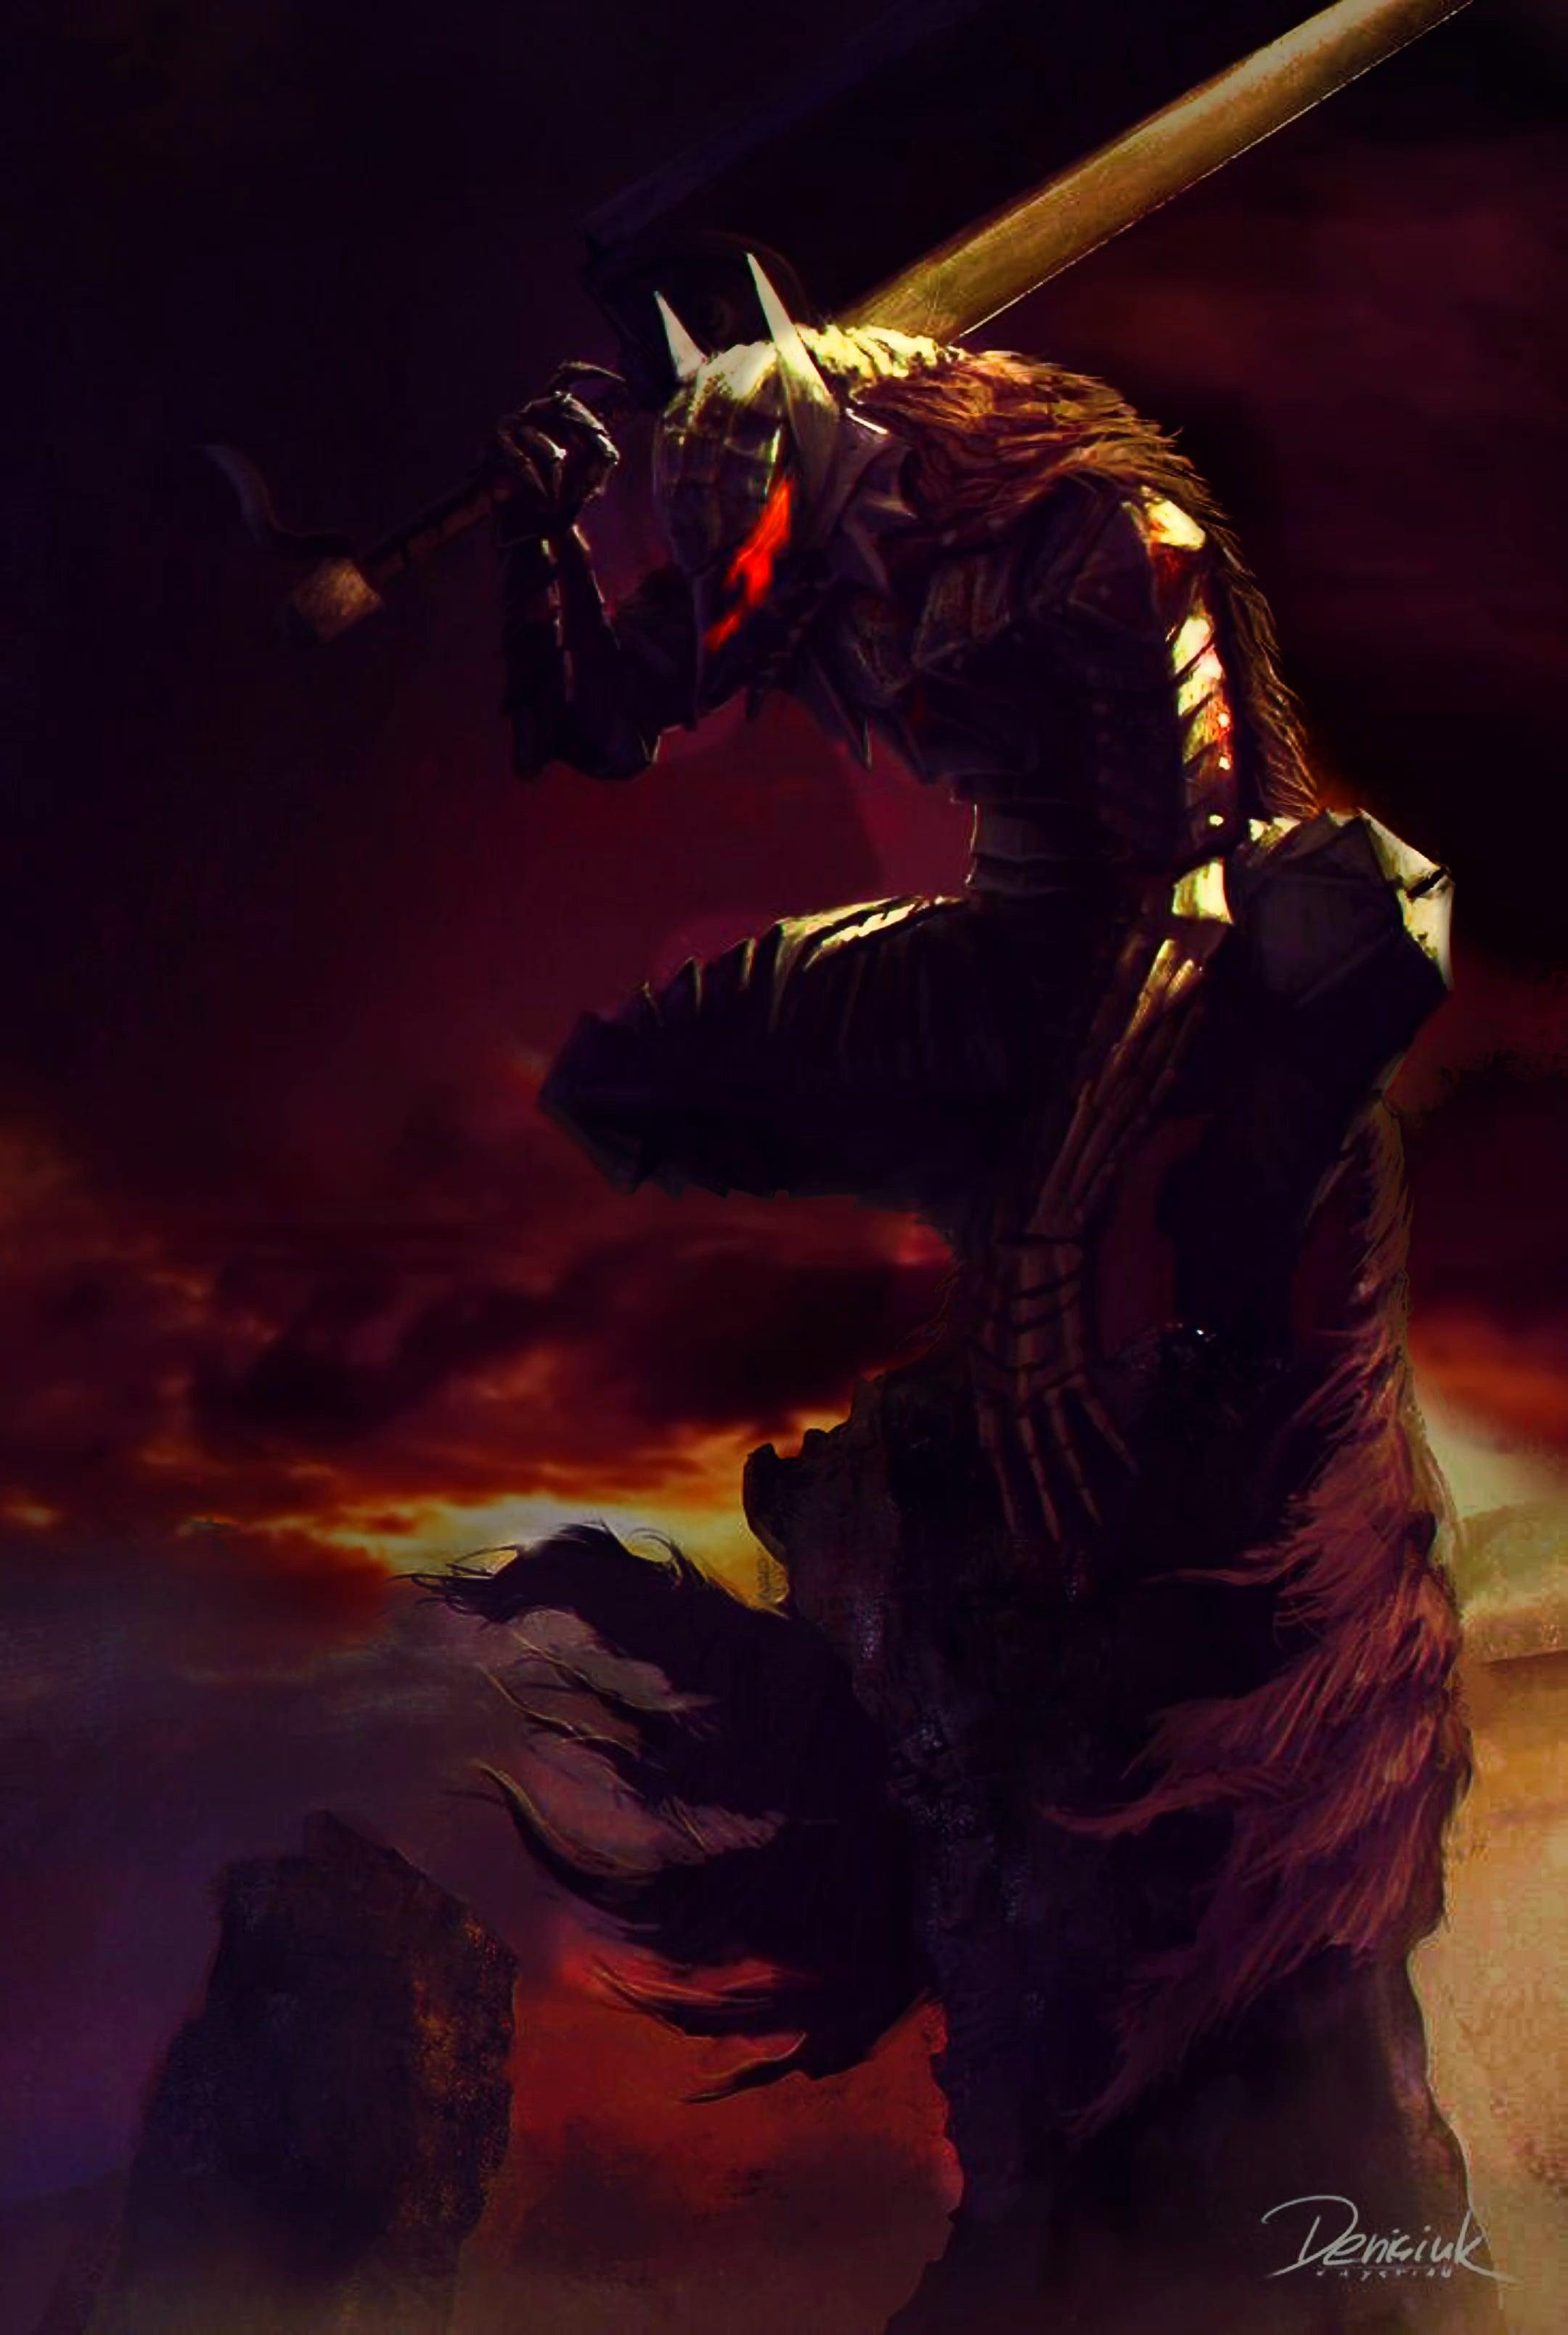 50 Guts Berserk Armor Gifs ideas in 2023  berserk dark fantasy dark souls